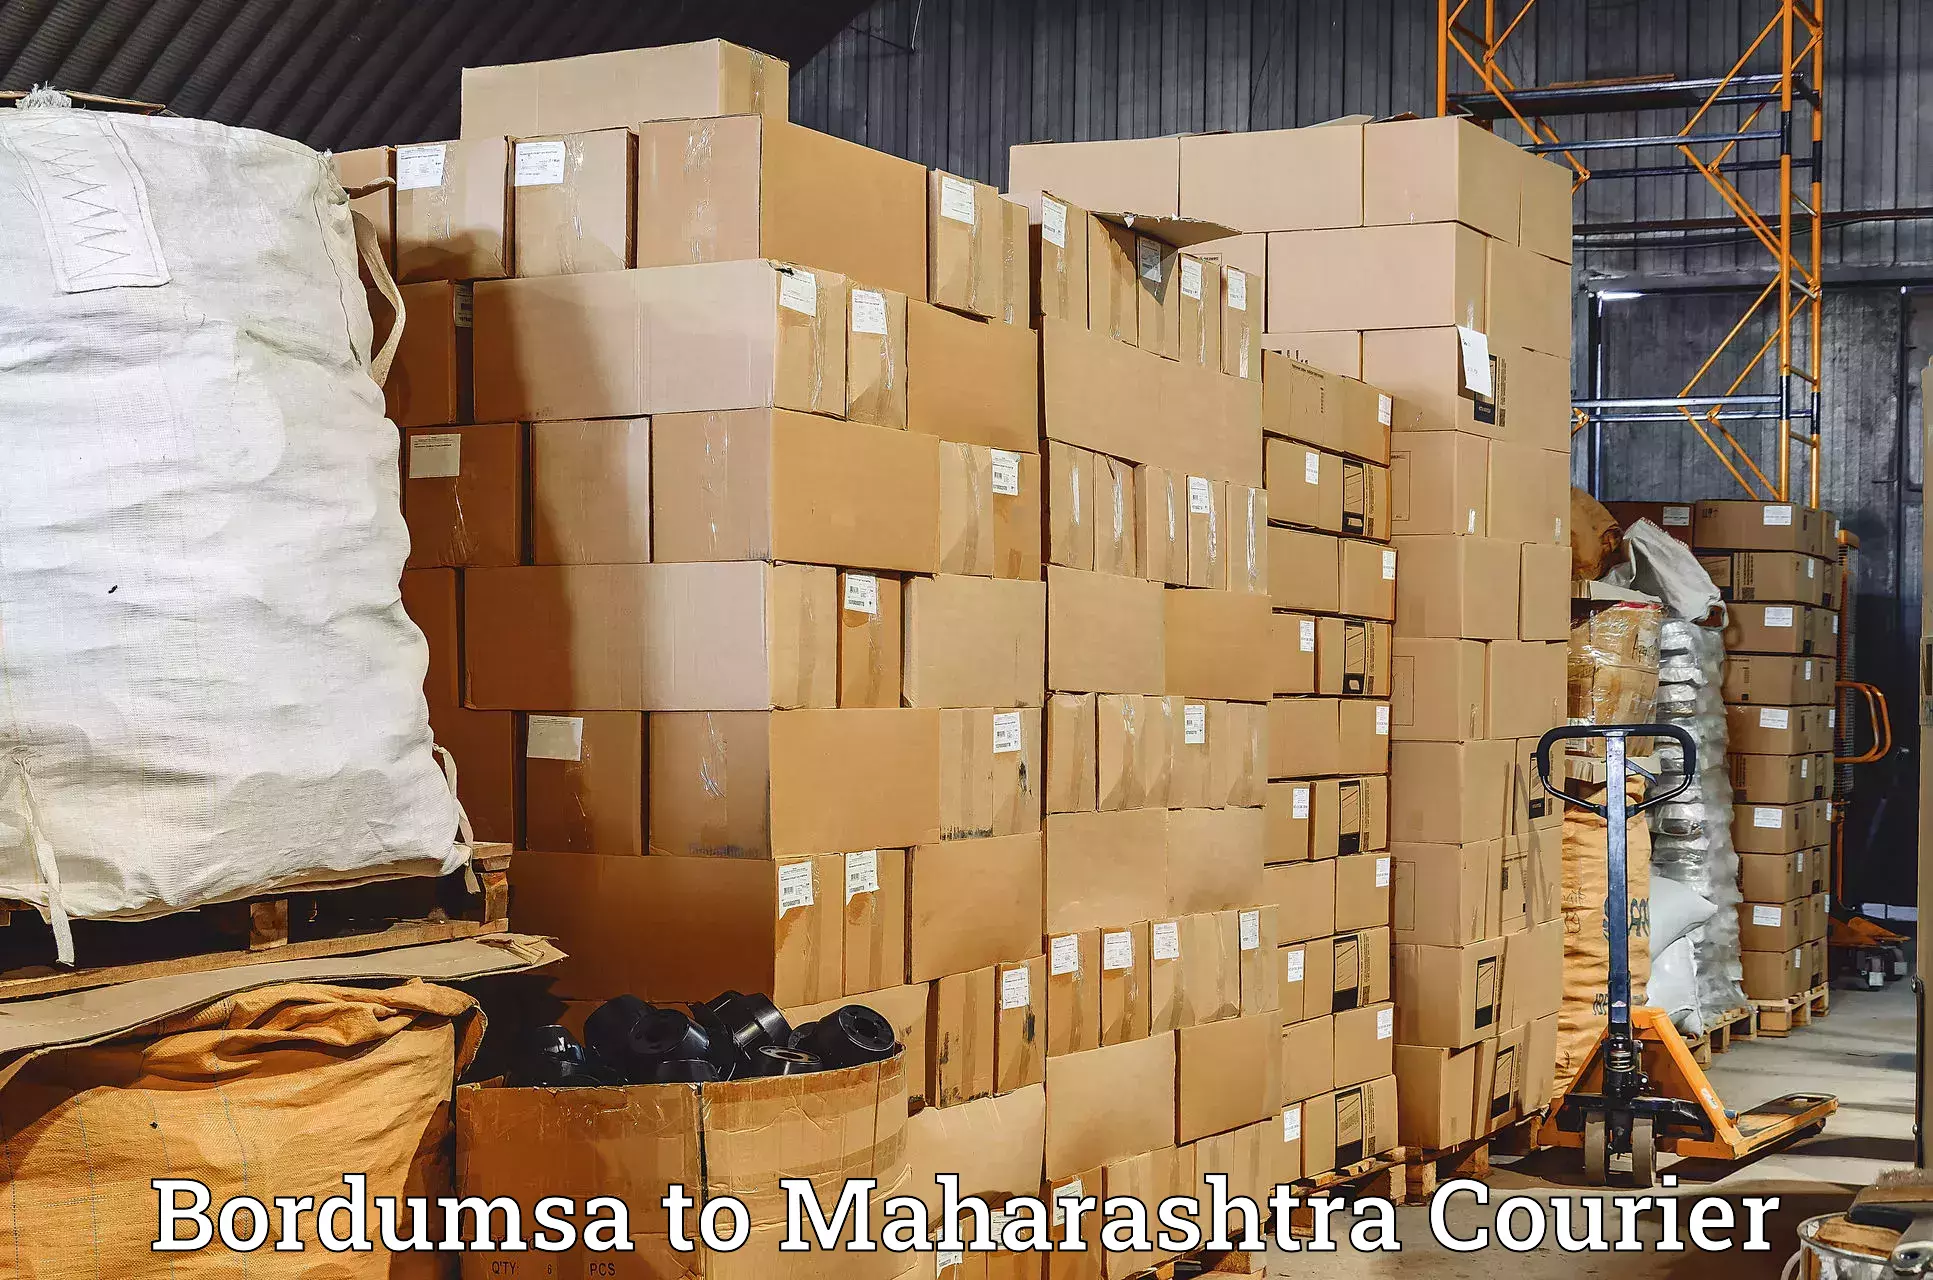 Digital courier platforms Bordumsa to Maharashtra